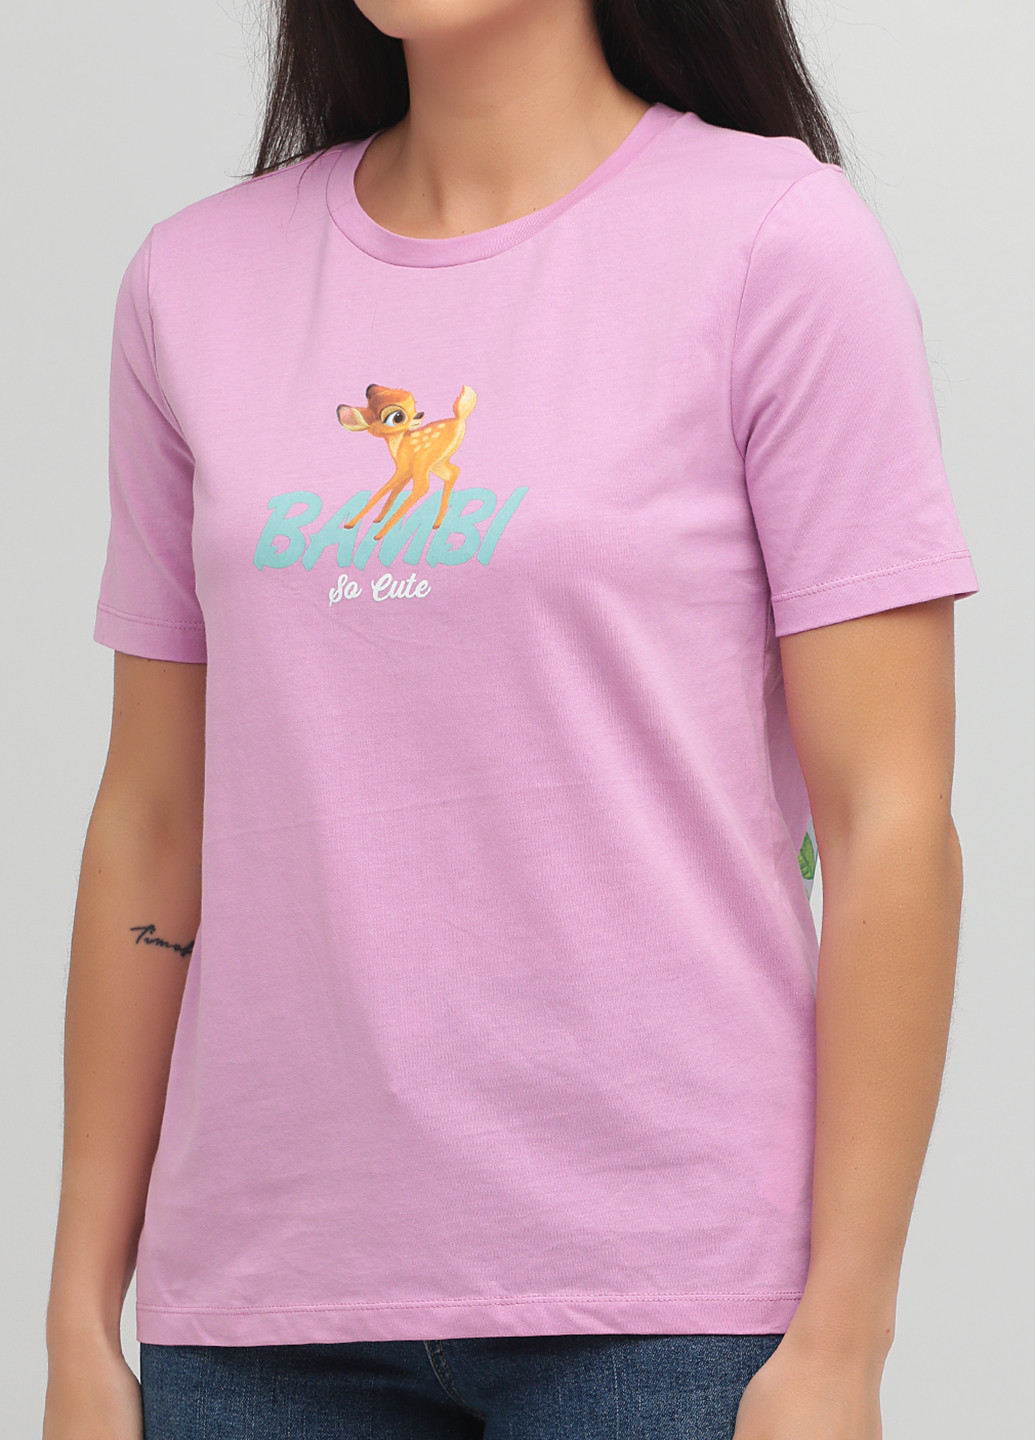 Розовая летняя футболка Zara